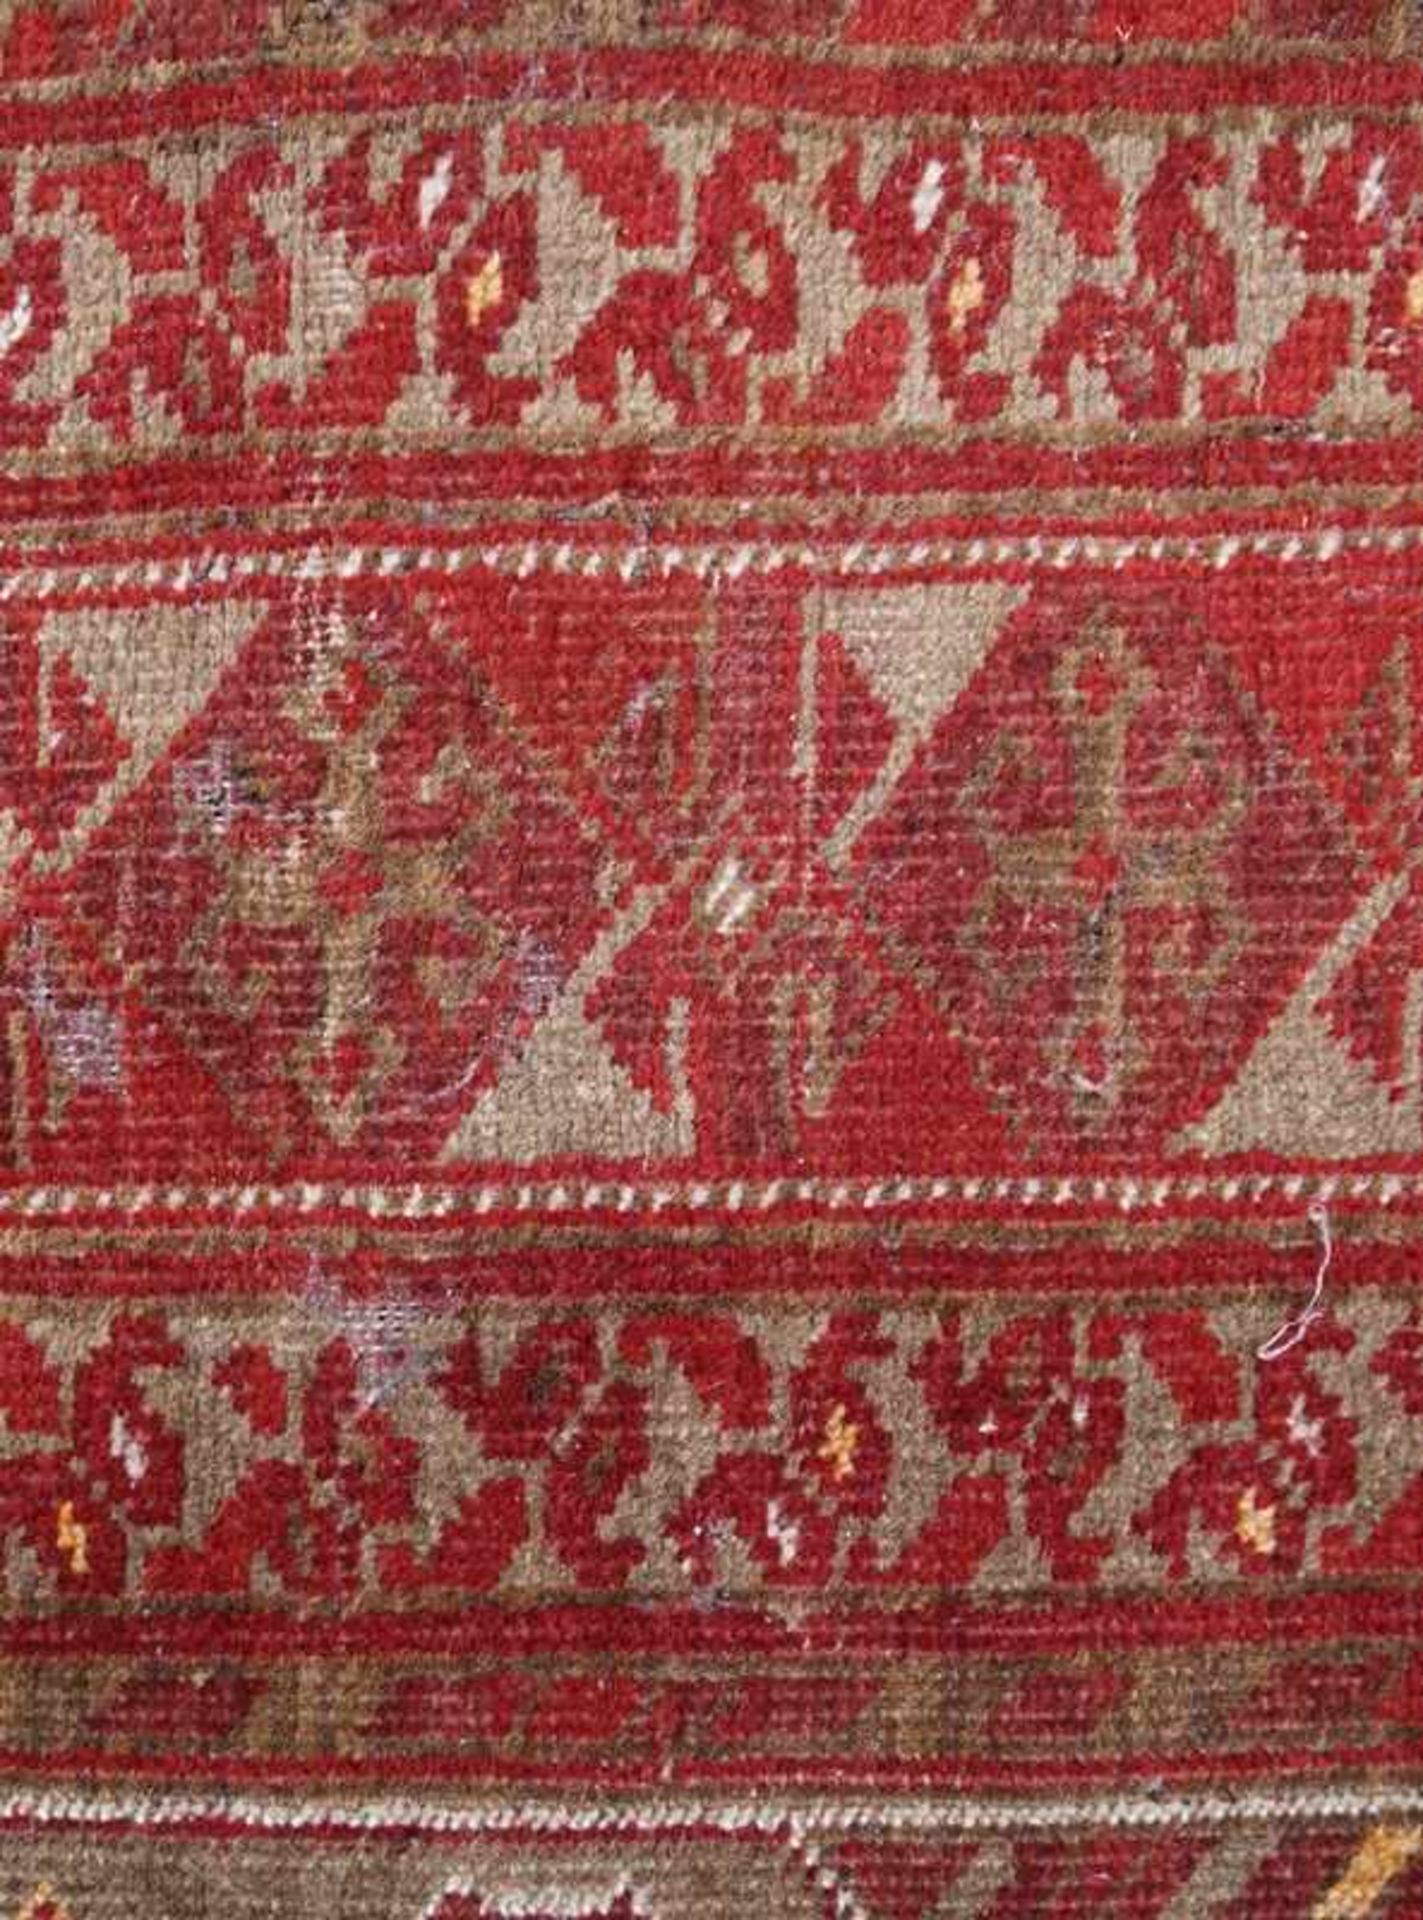 Antiker Türkischer Teppich mit Vasenmotiv - Bild 4 aus 6